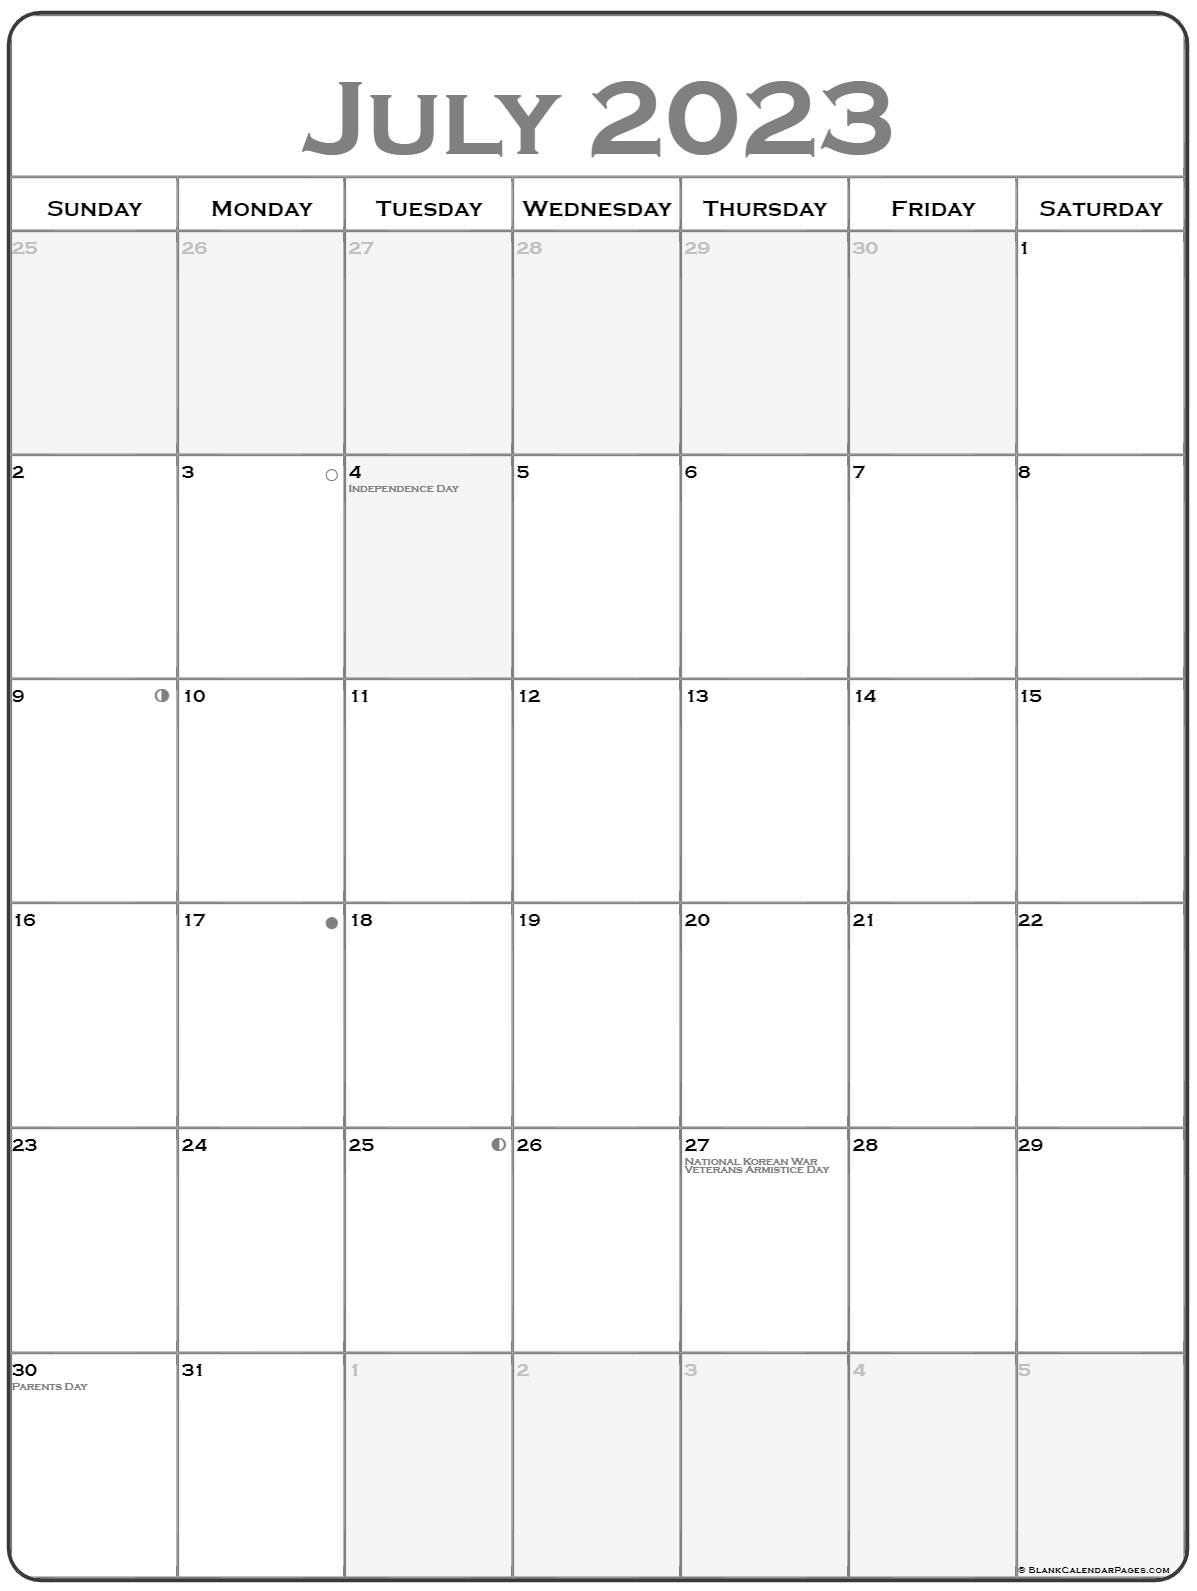 Catch Wiki Calendar December 2022